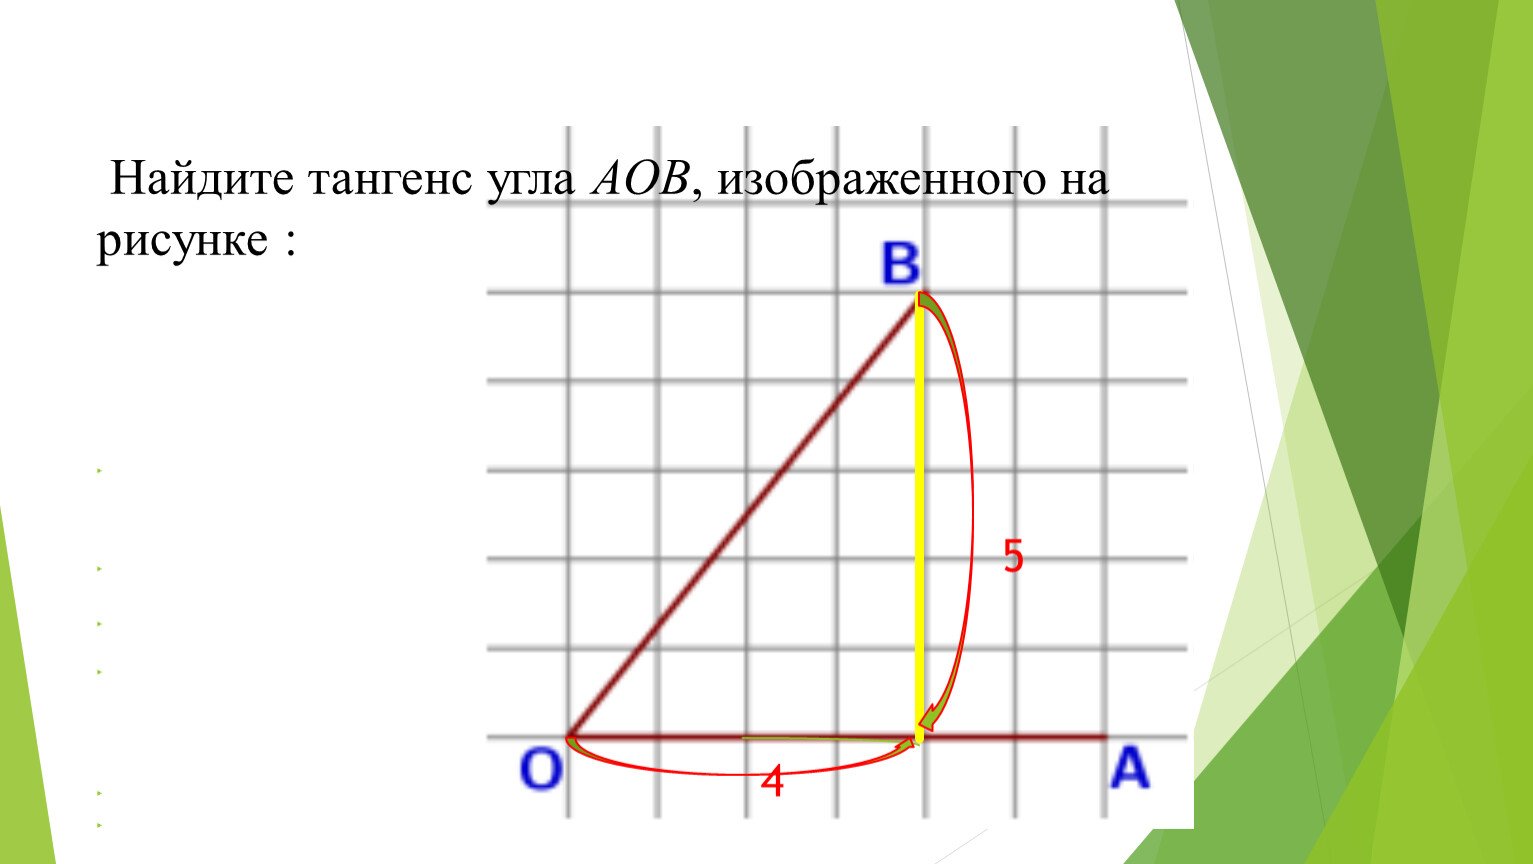 Найдите тангенс угла аов треугольника изображенного